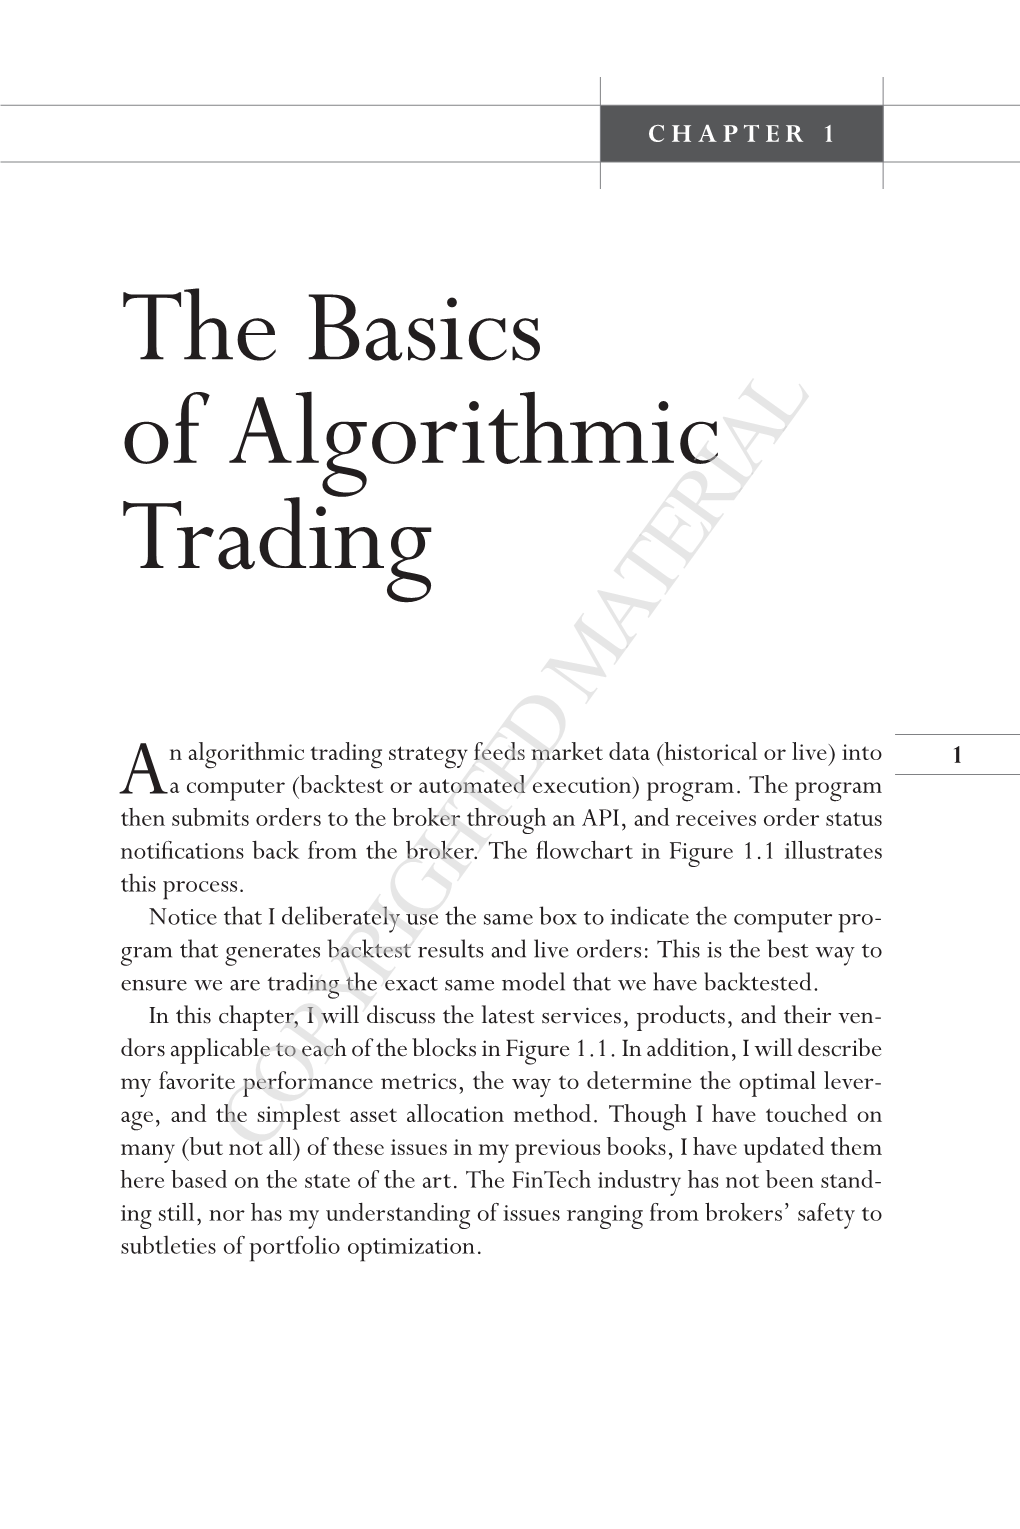 The Basics of Algorithmic Trading